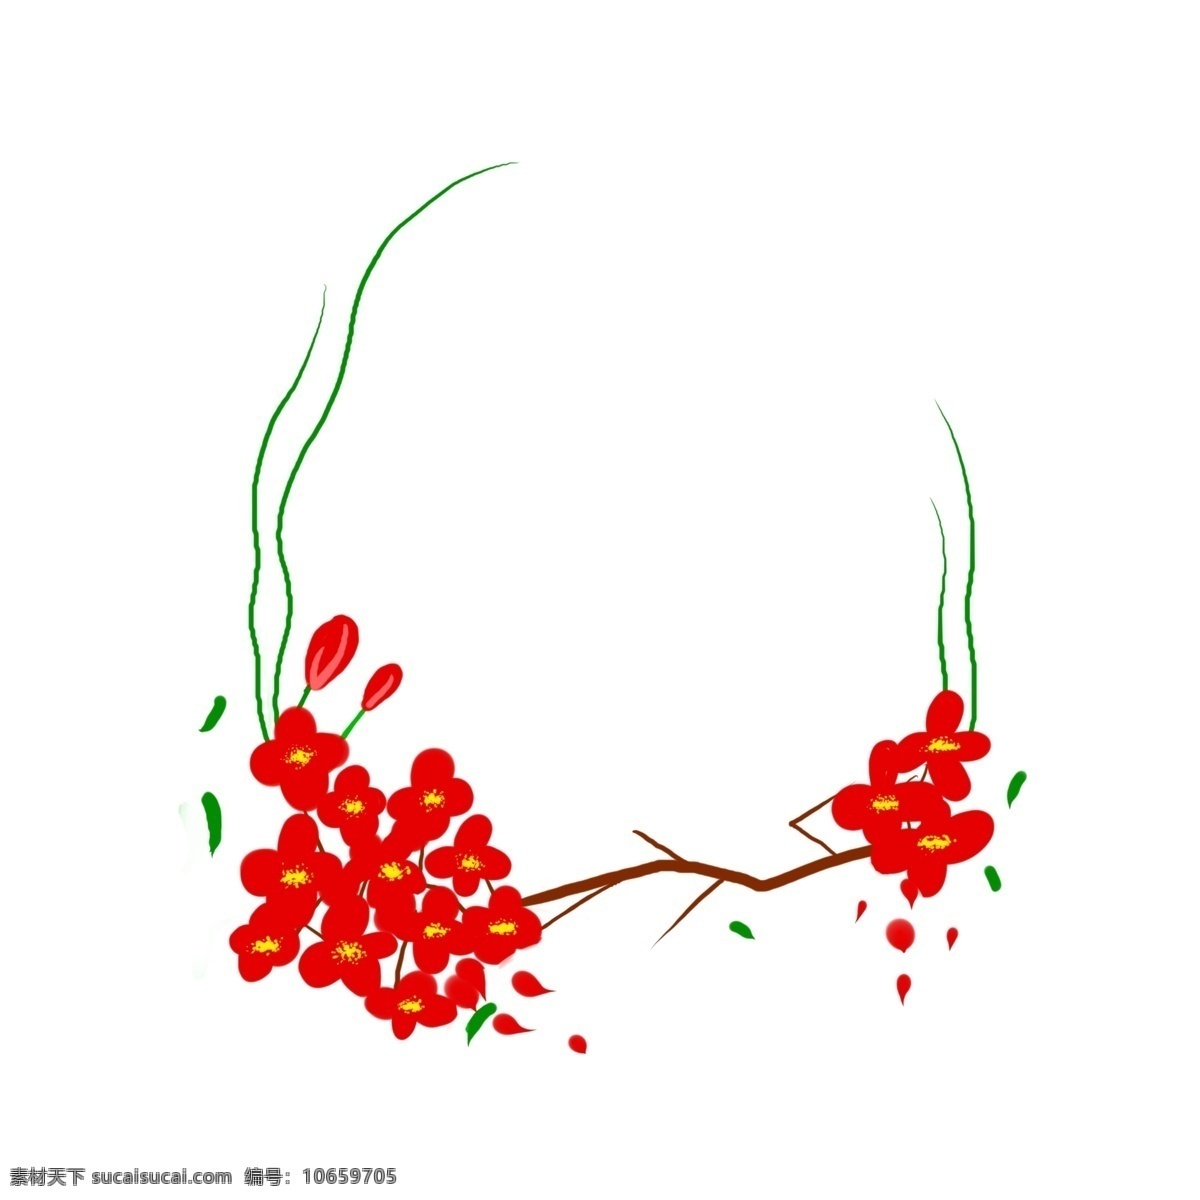 红色 海棠花 边框 红色的 花朵 装饰 树枝 绿叶 原创的 插画 装饰边框 花朵边框 手绘的